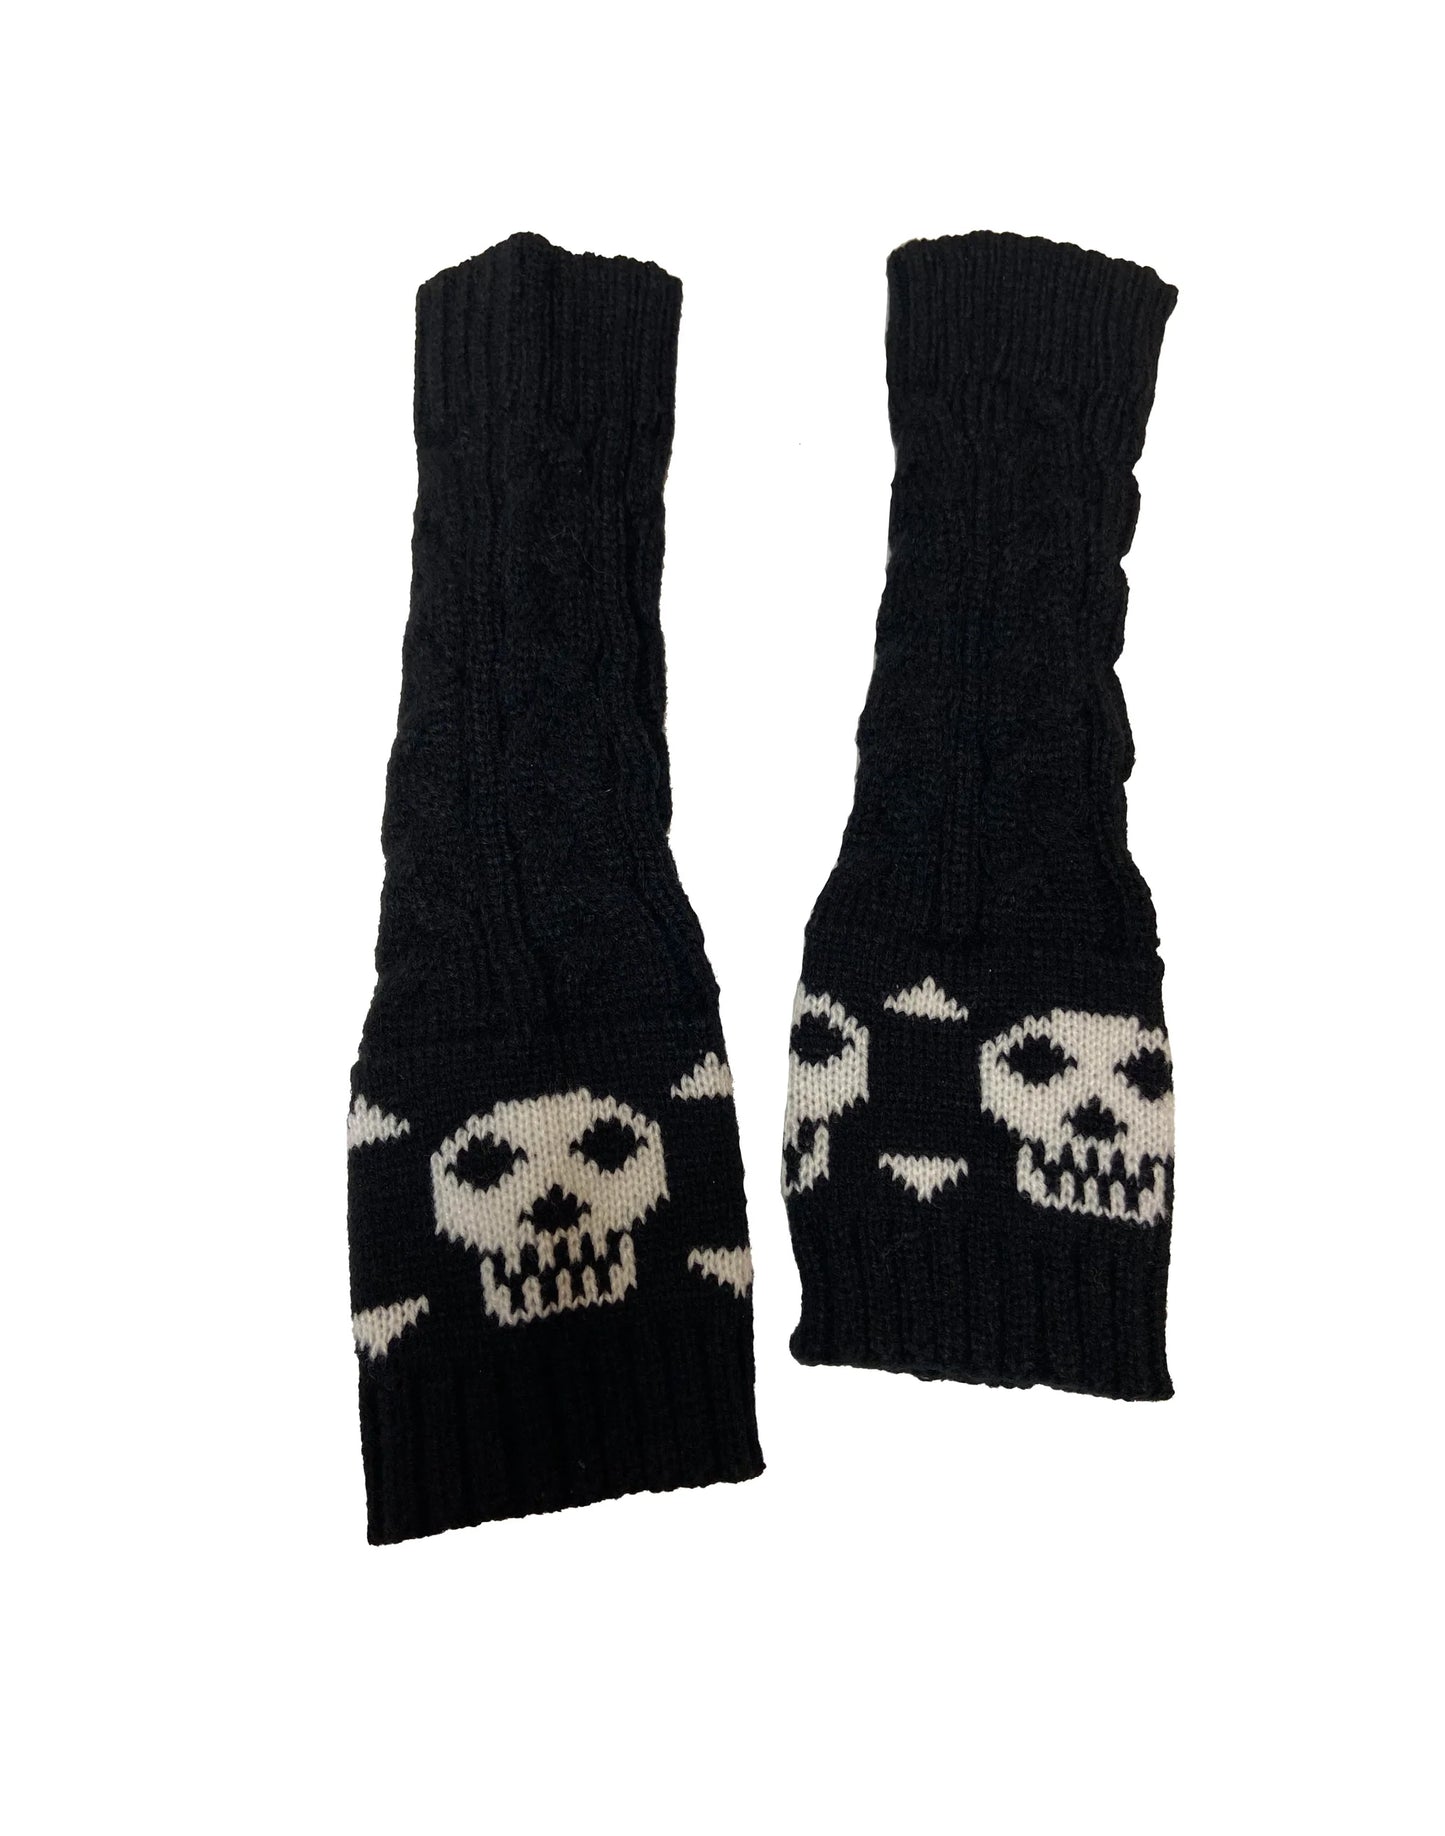 Pamela Mann Skull & Crossbone Fingerless Gloves - Black chunky cable knit long fingerless arm warmer sleeves with a stylised skull and cross-bone design.